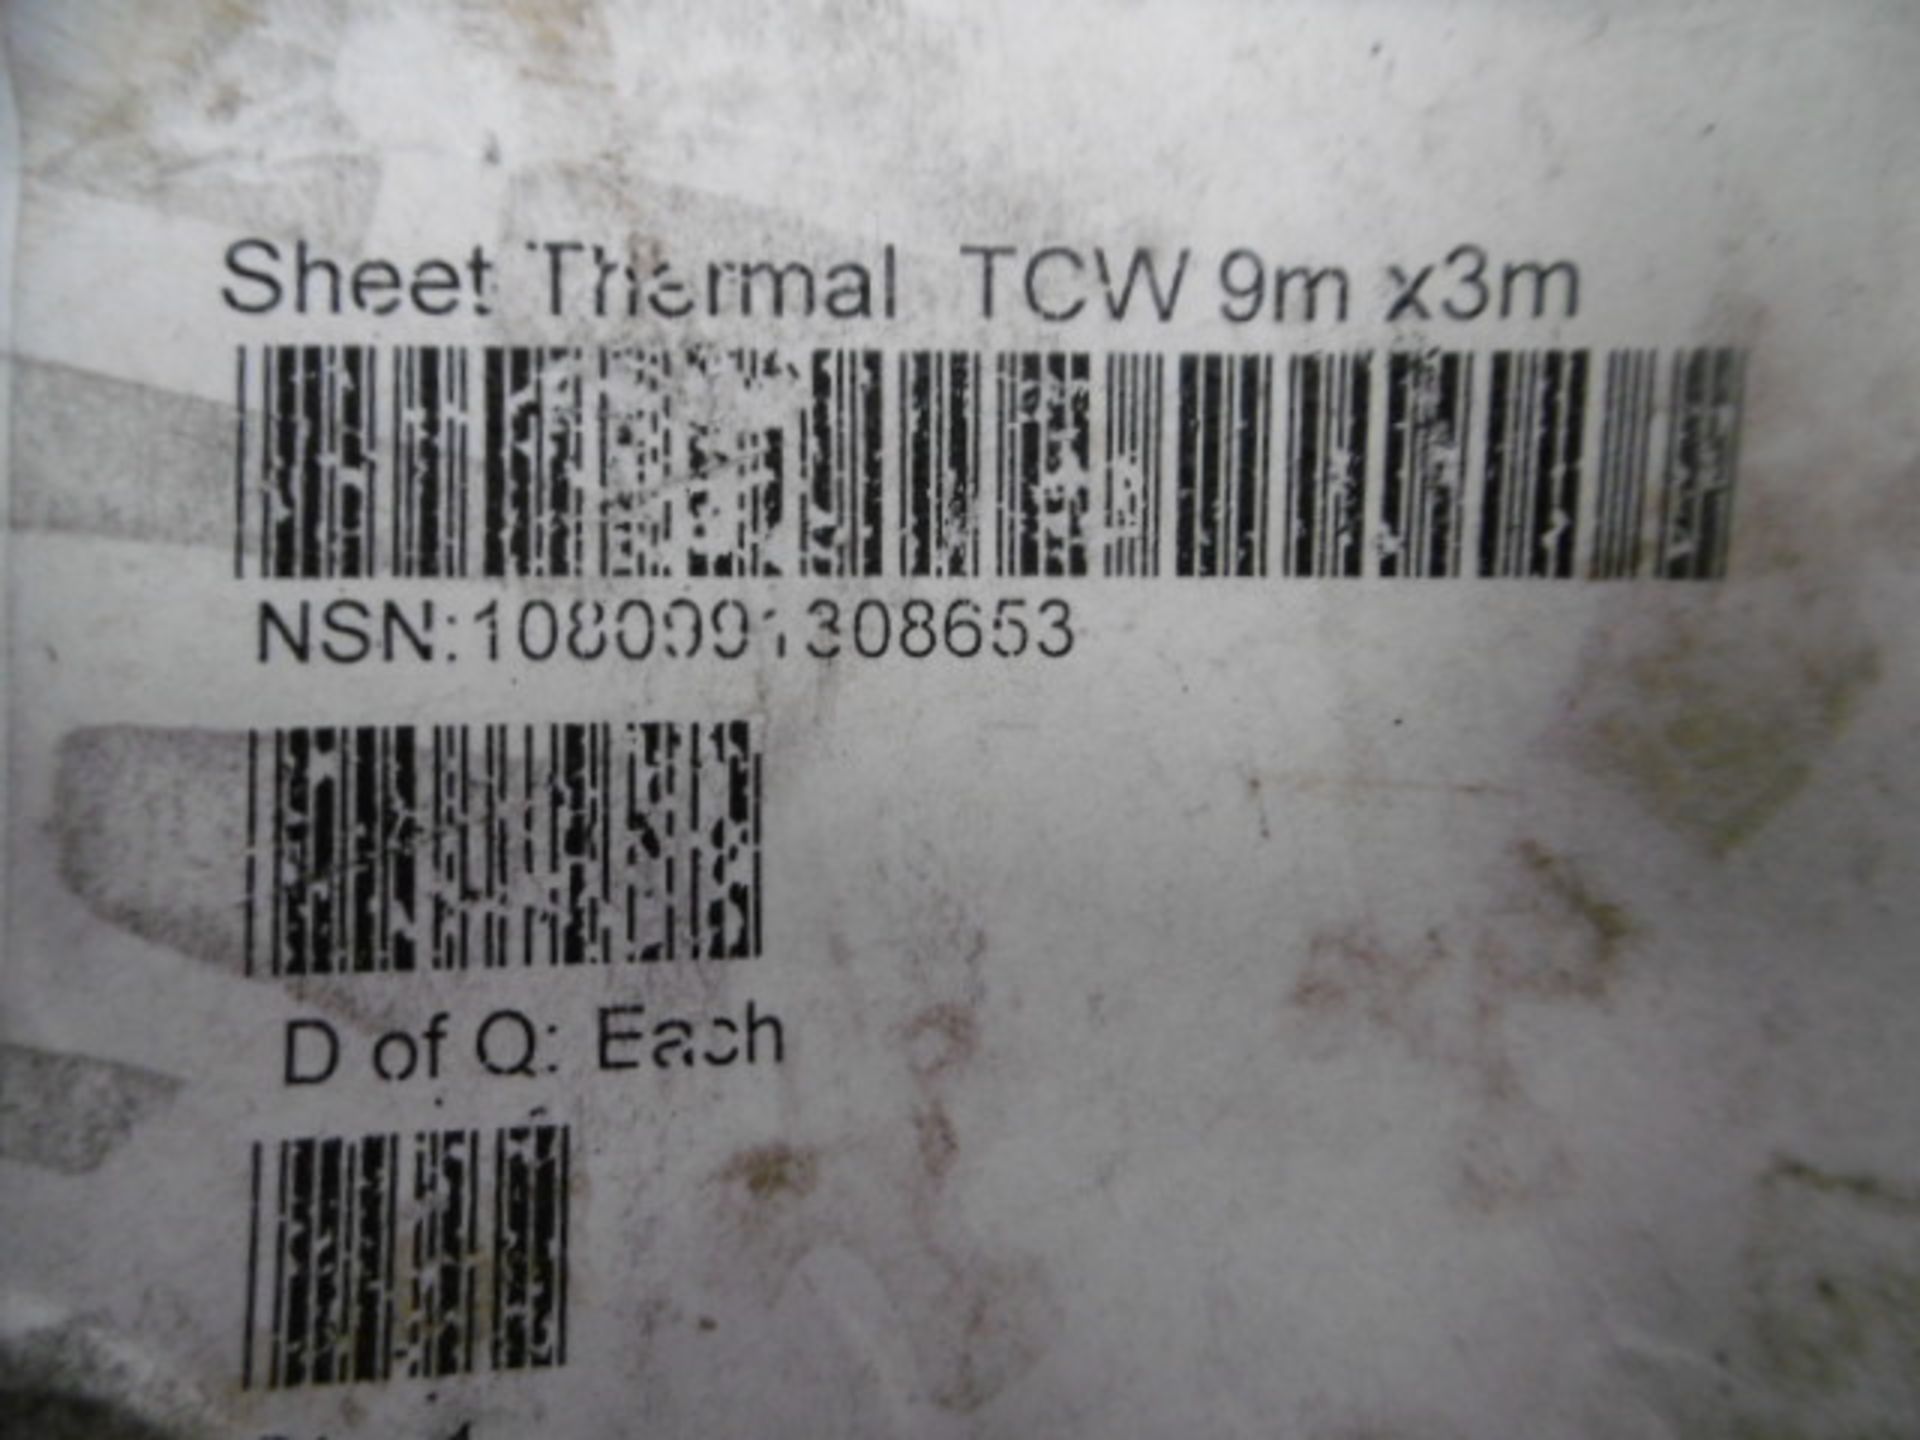 9m x 3m Thermal Sheet - Image 6 of 6